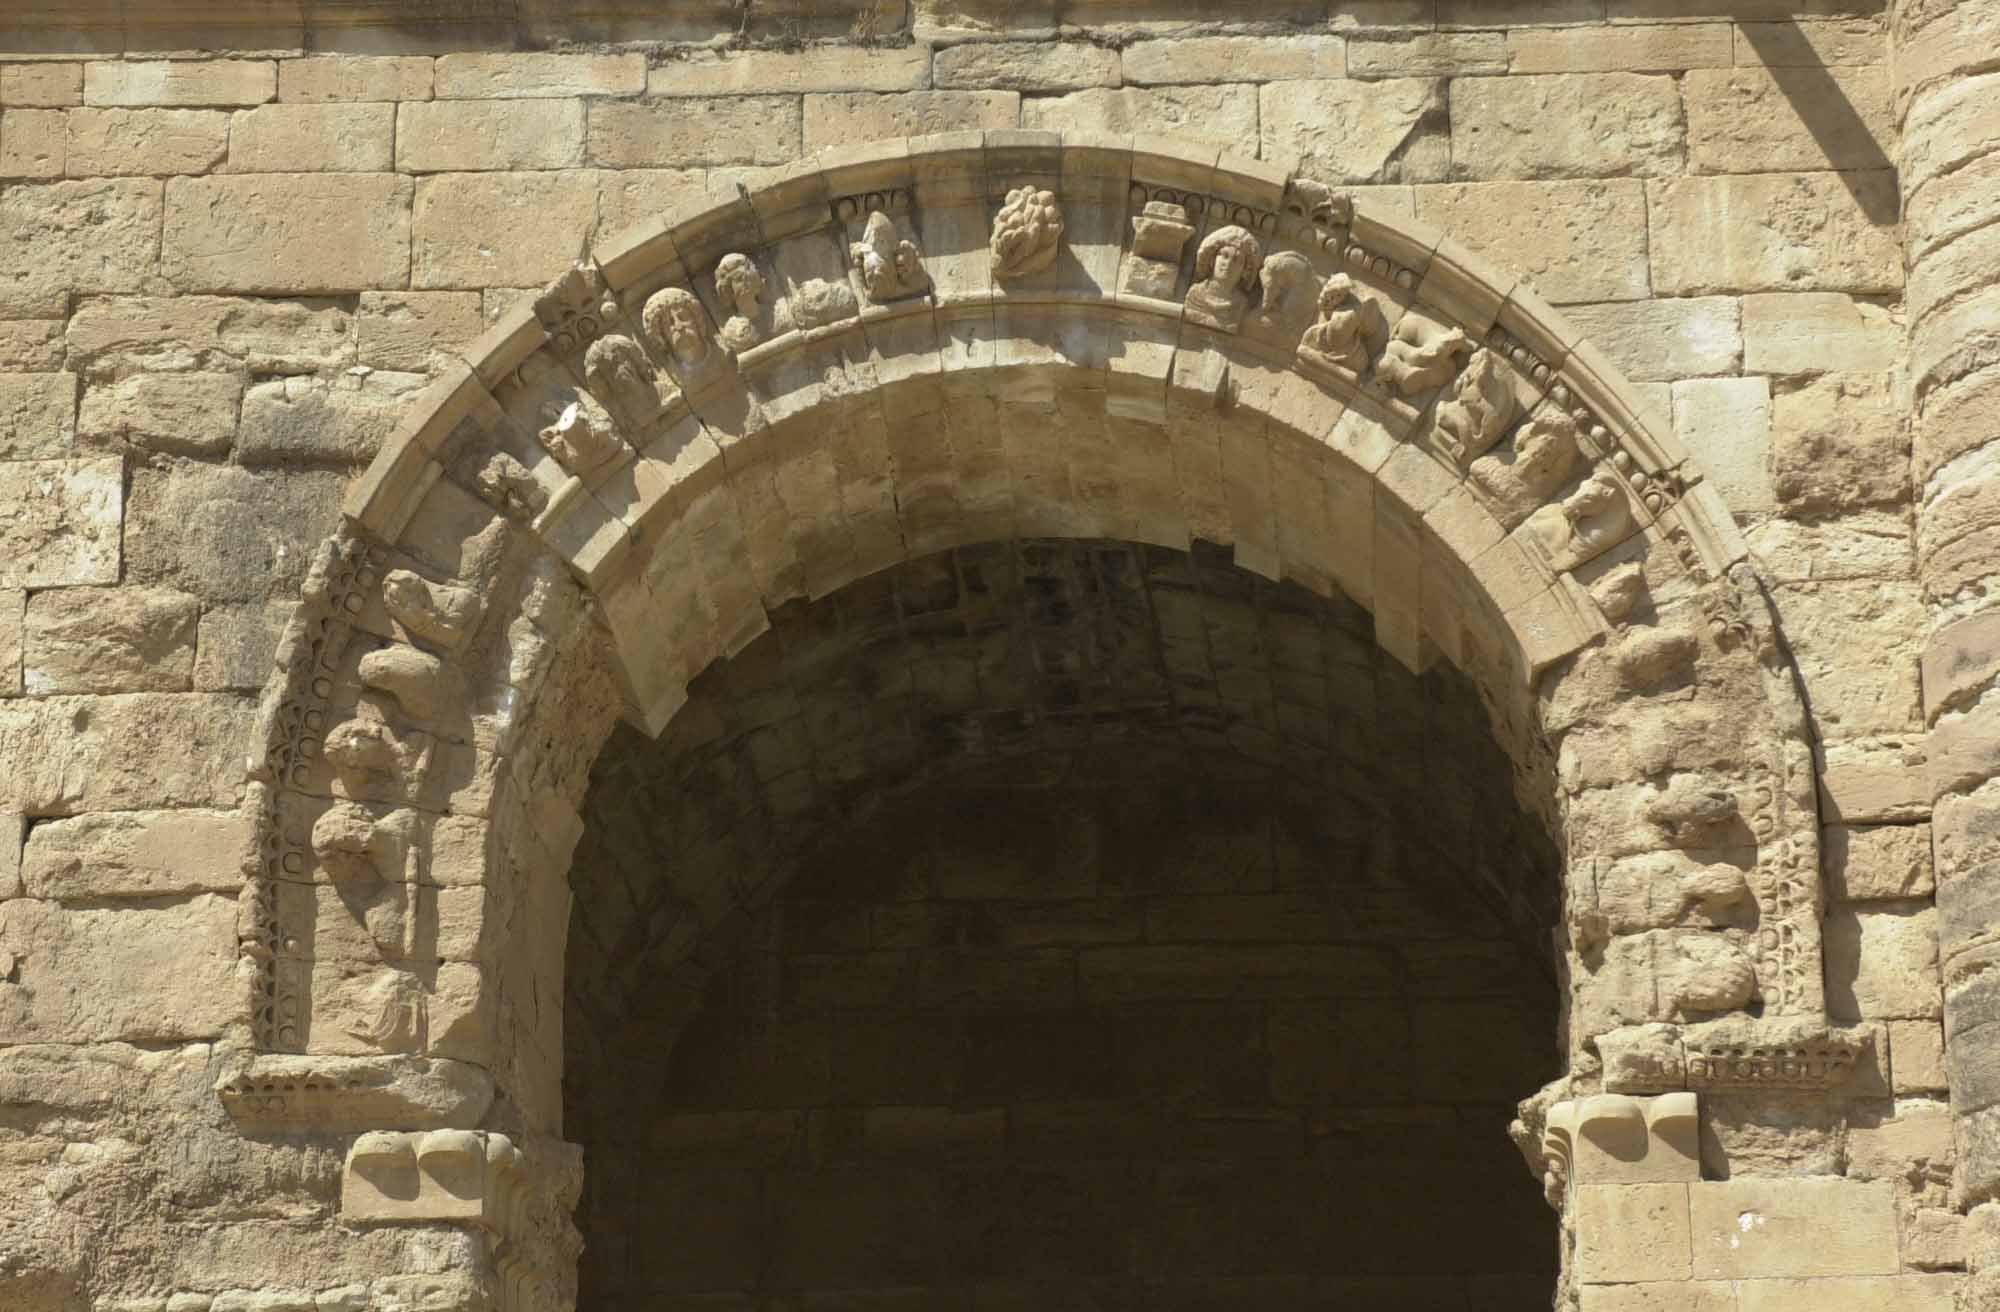 A képhez tartozó alt jellemző üres; Hatra-1454.jpg a fájlnév